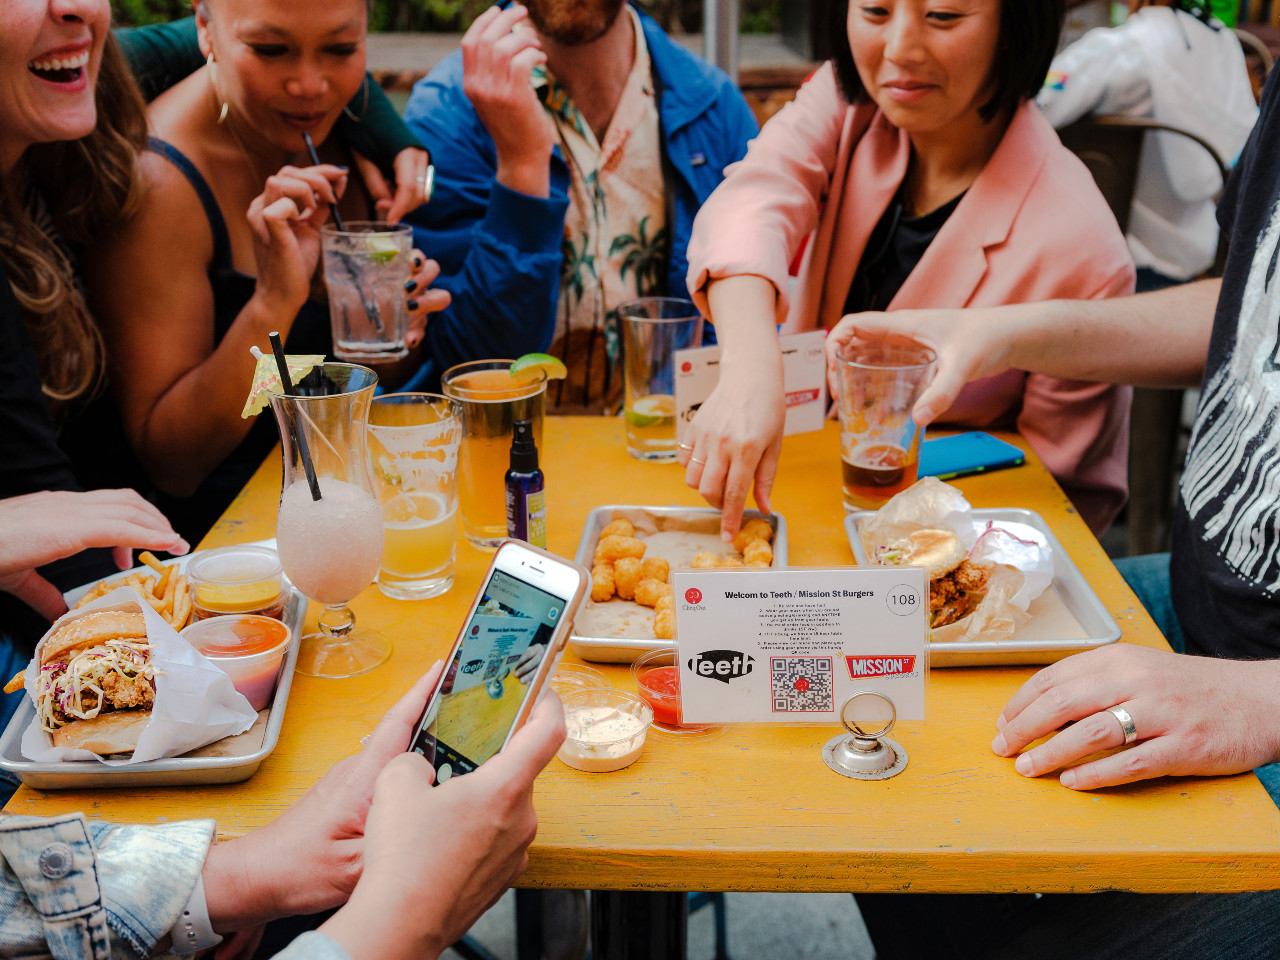 Diners at Teeth, un bar en San Francisco, el 9 de julio de 2021. Teeth comenzó a usar menús digitales basados ​​en tecnología de códigos QR en agosto. (Ulysses Ortega / The New York Times)